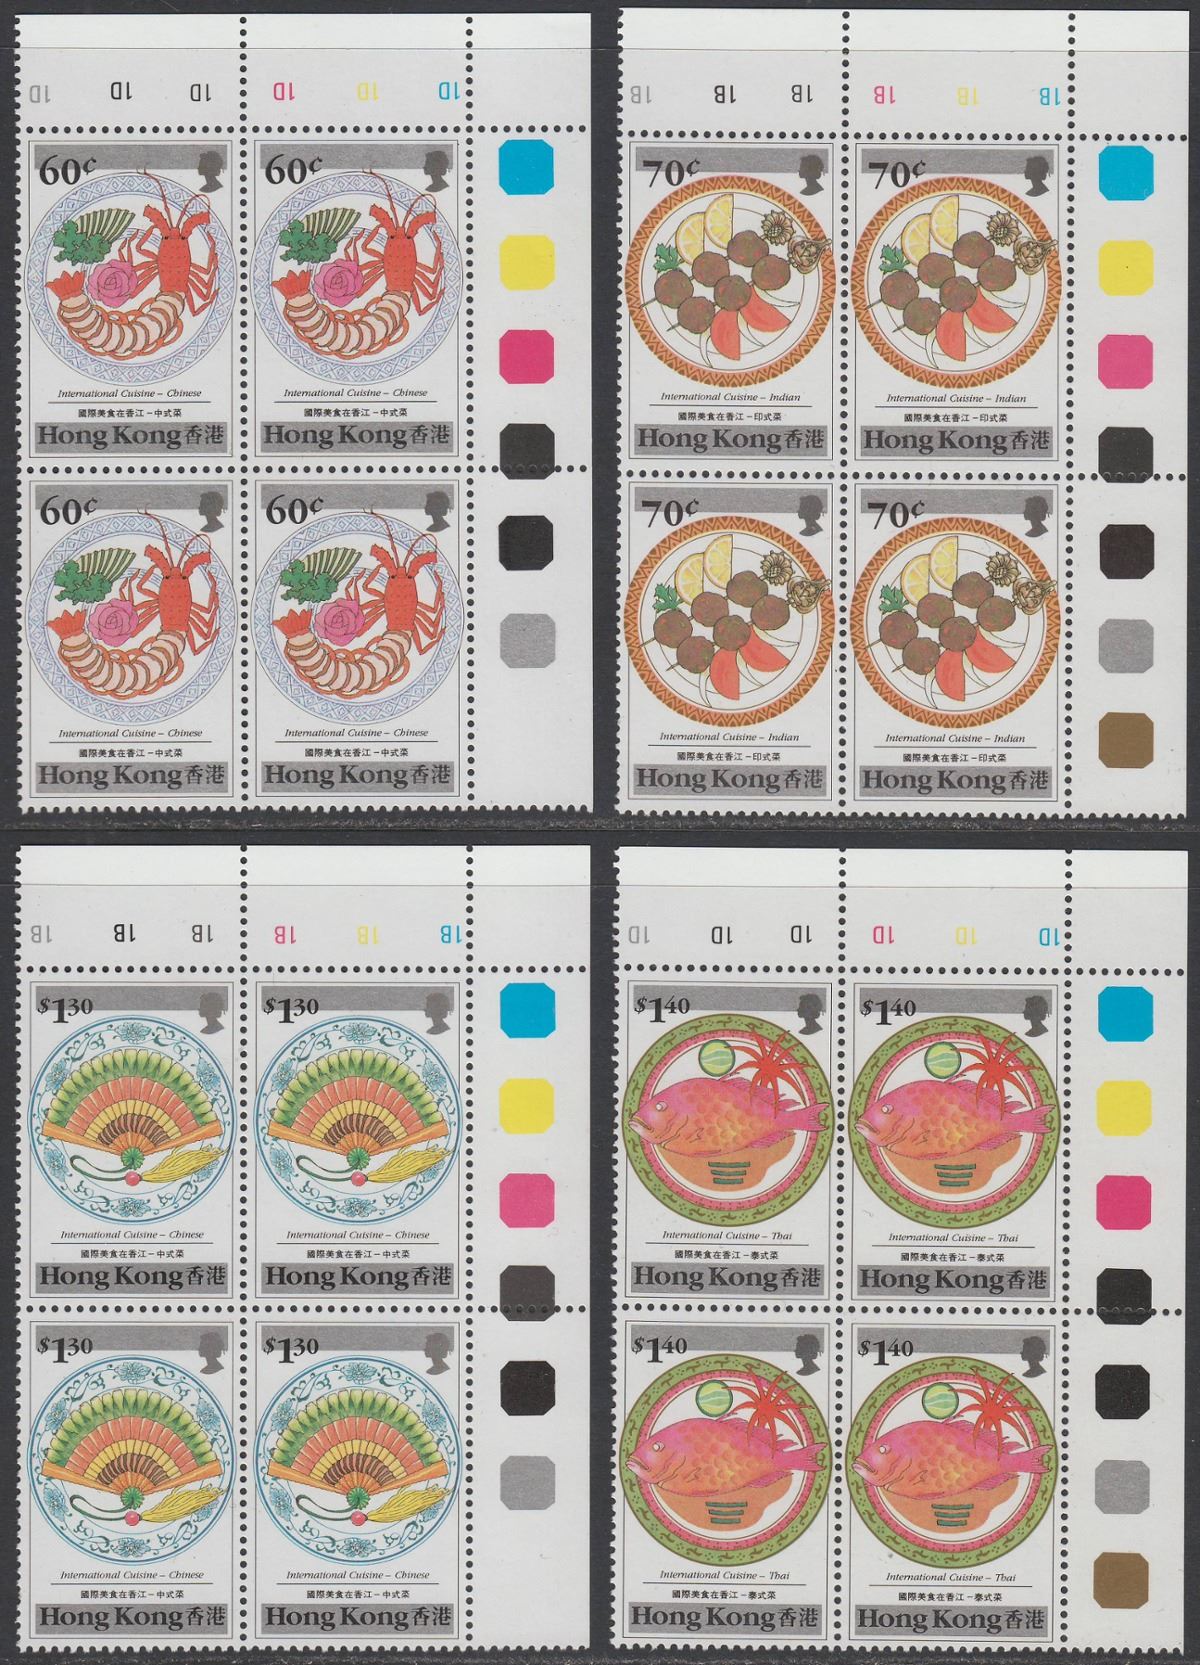 Hong Kong 1990 QEII International Cuisine Plate Block Set Mint SG636-641 cat £32